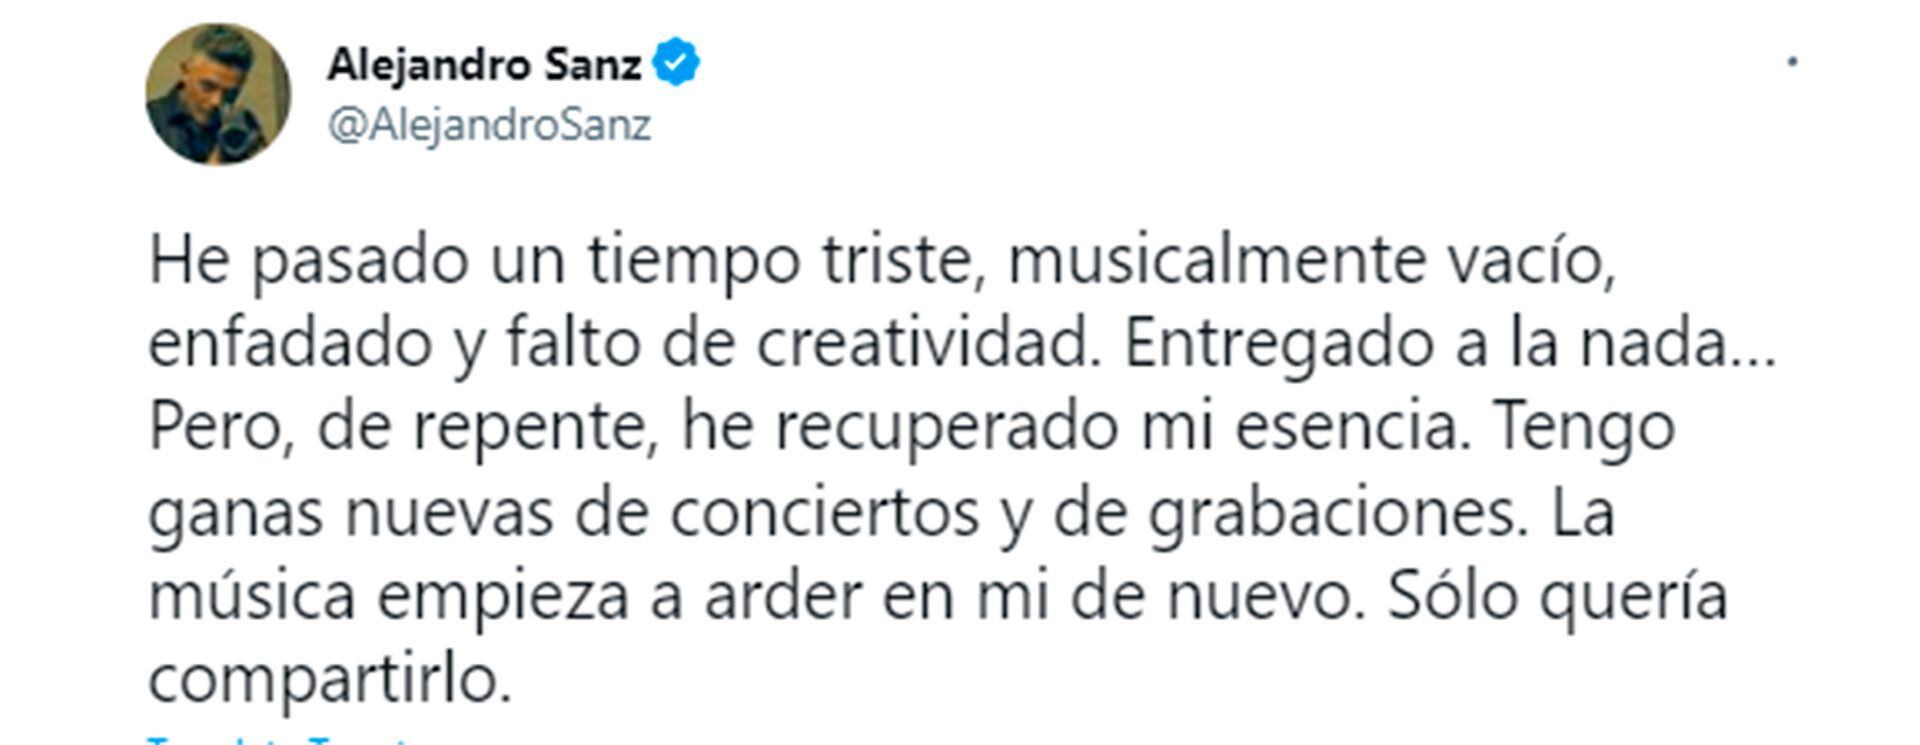 Alejandro Sanz generó preocupación entre sus seguidores